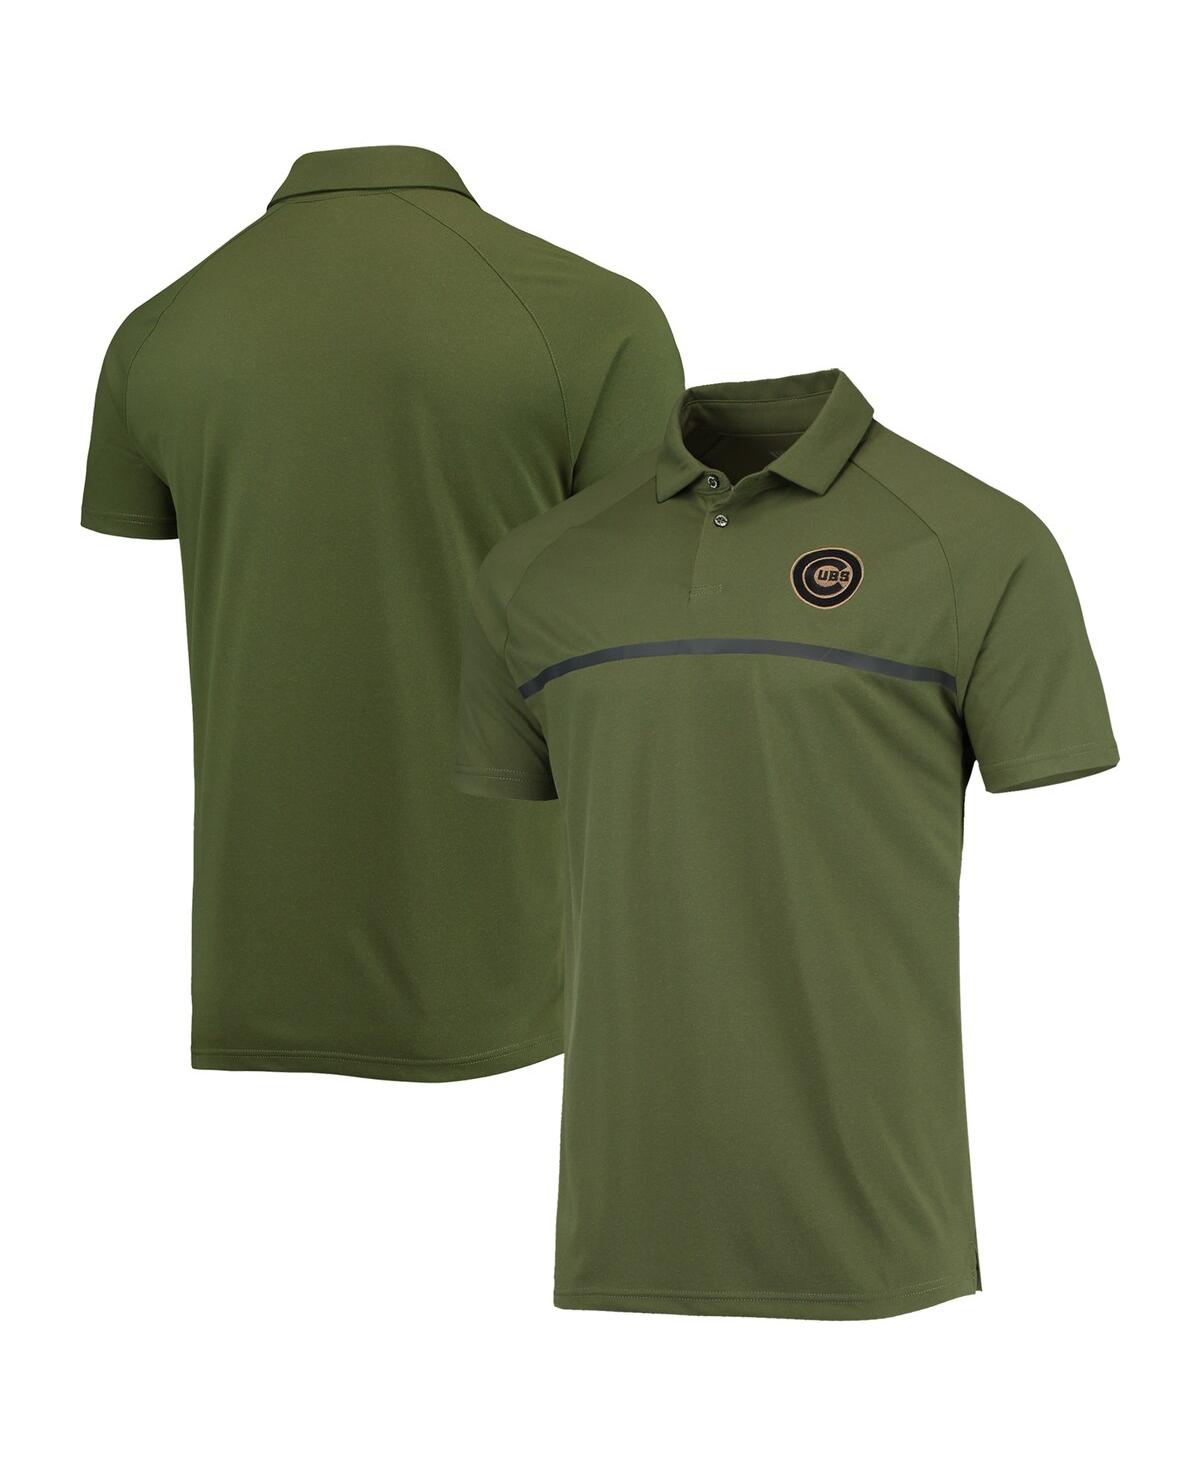 Men's LevelWear Olive Chicago Cubs Delta Sector Raglan Polo Shirt - Olive